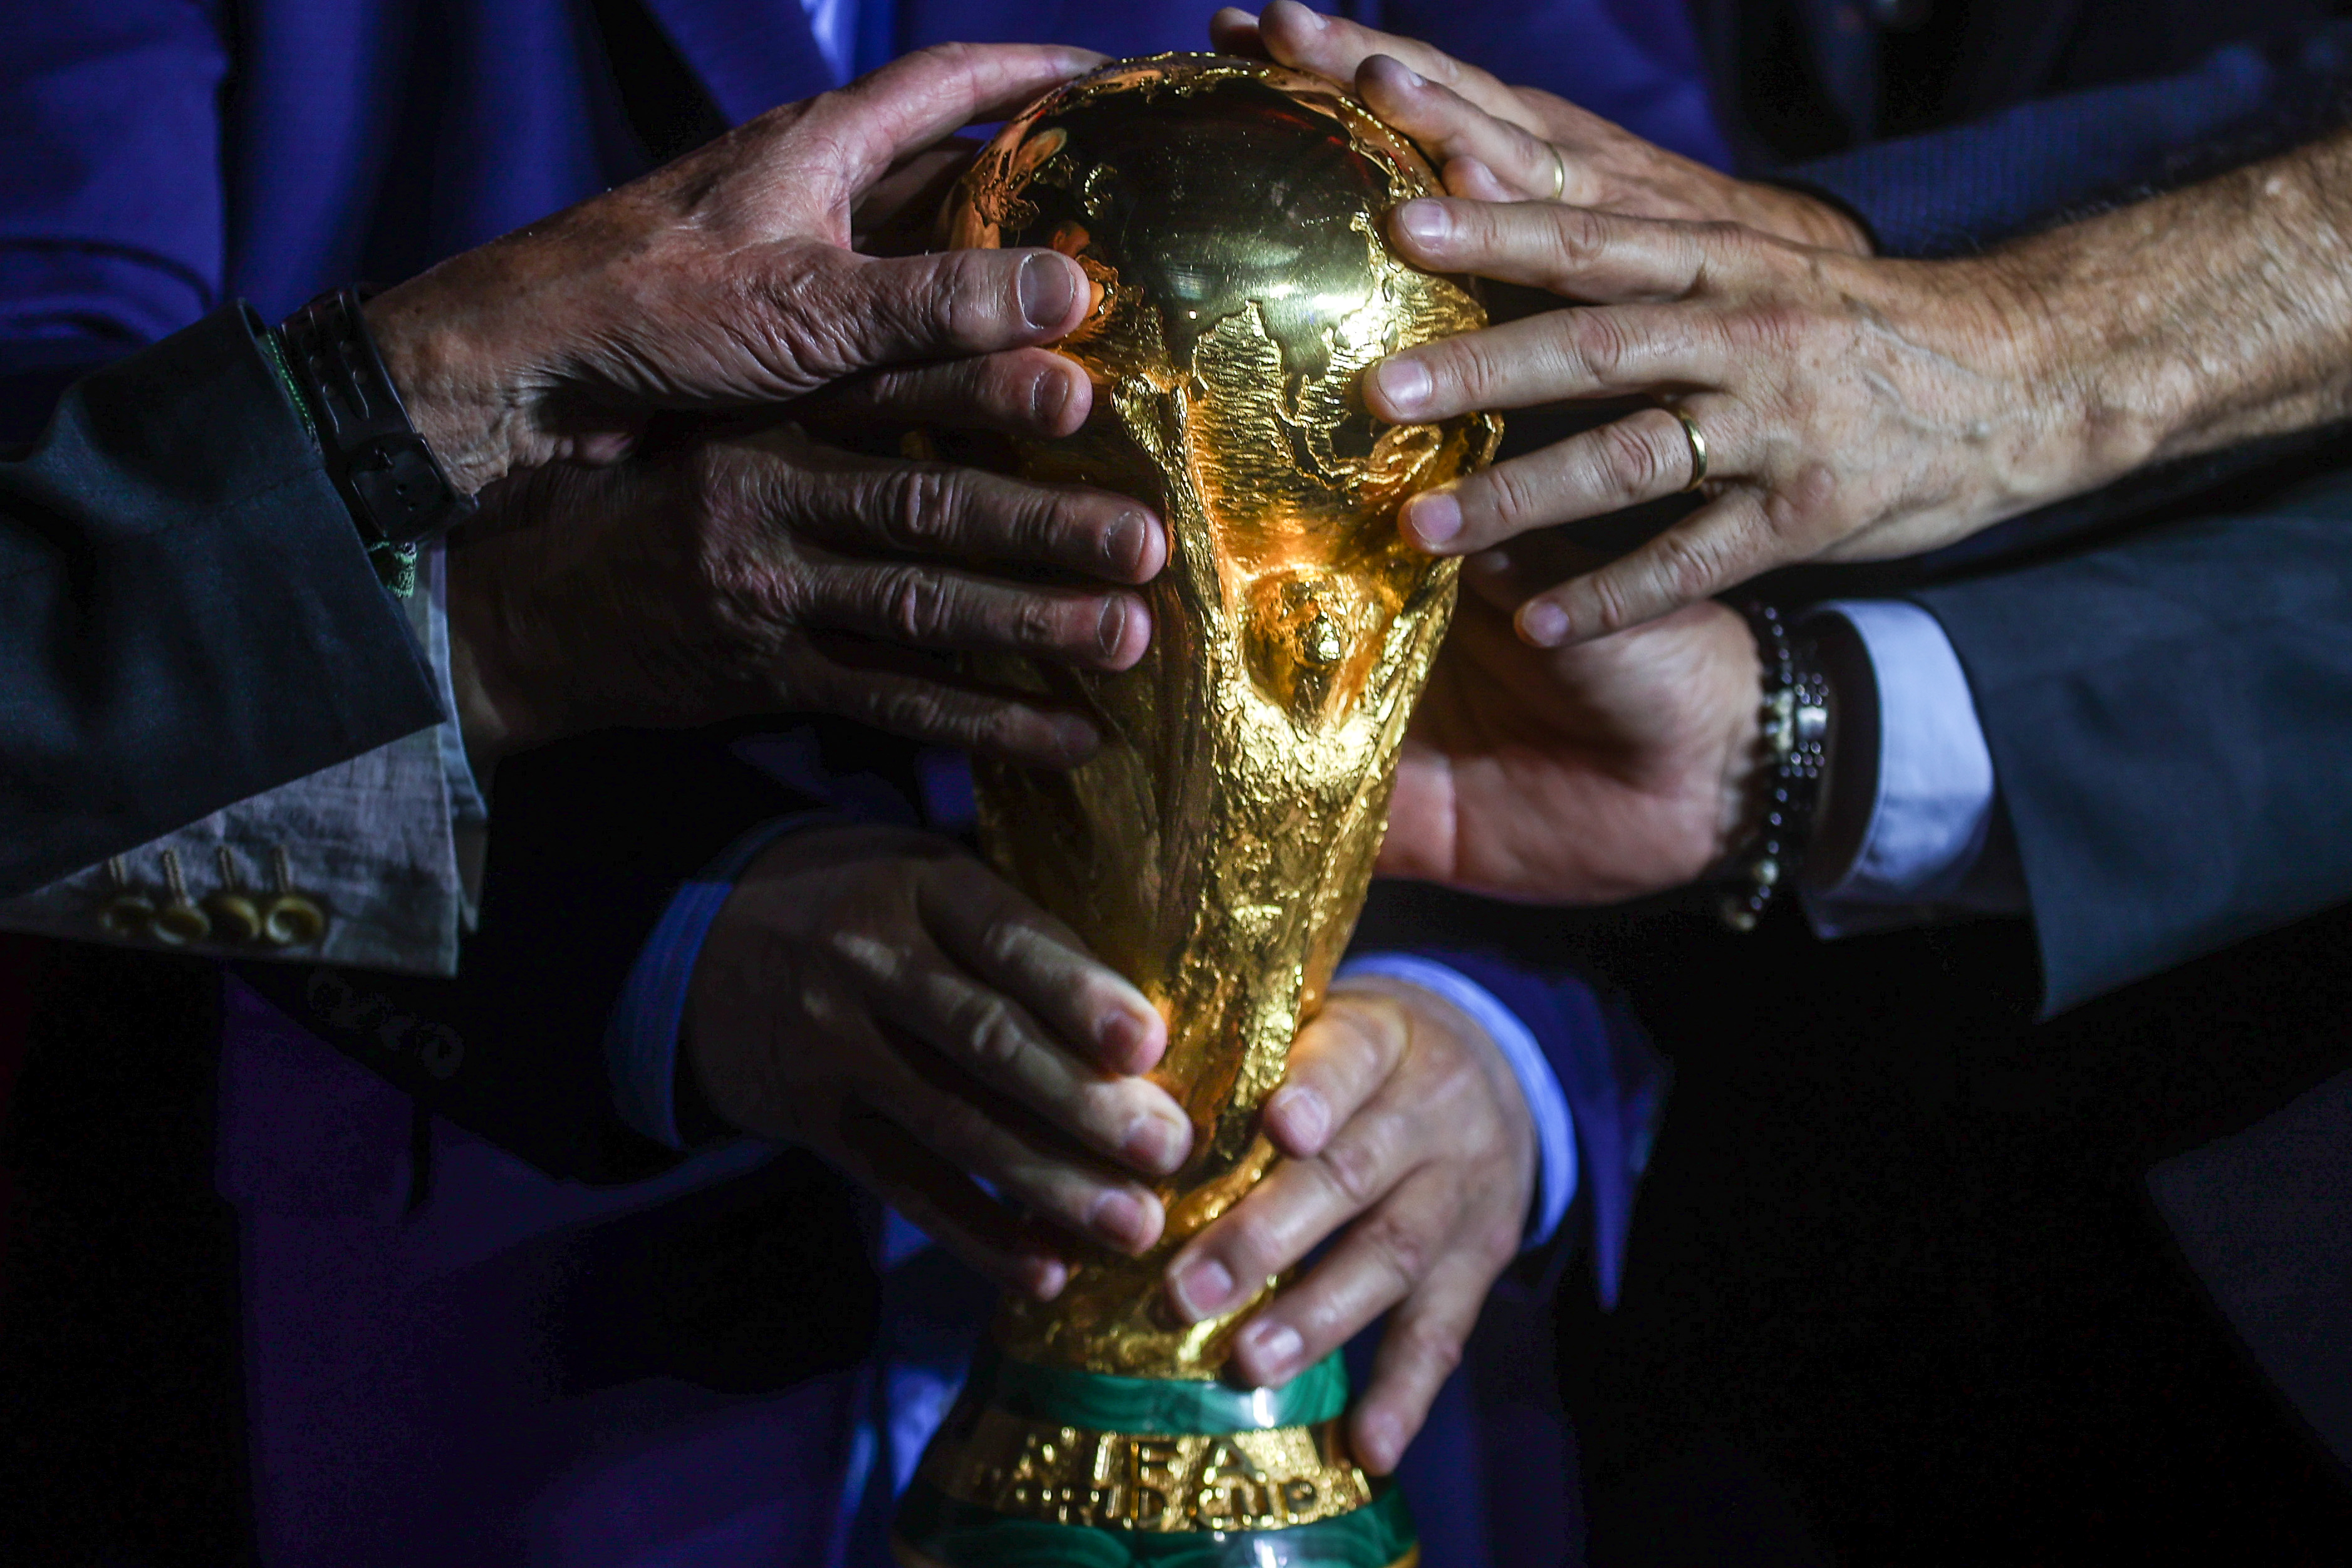 Copa Mundial, el trofeo más codiciado y hermoso del futbol